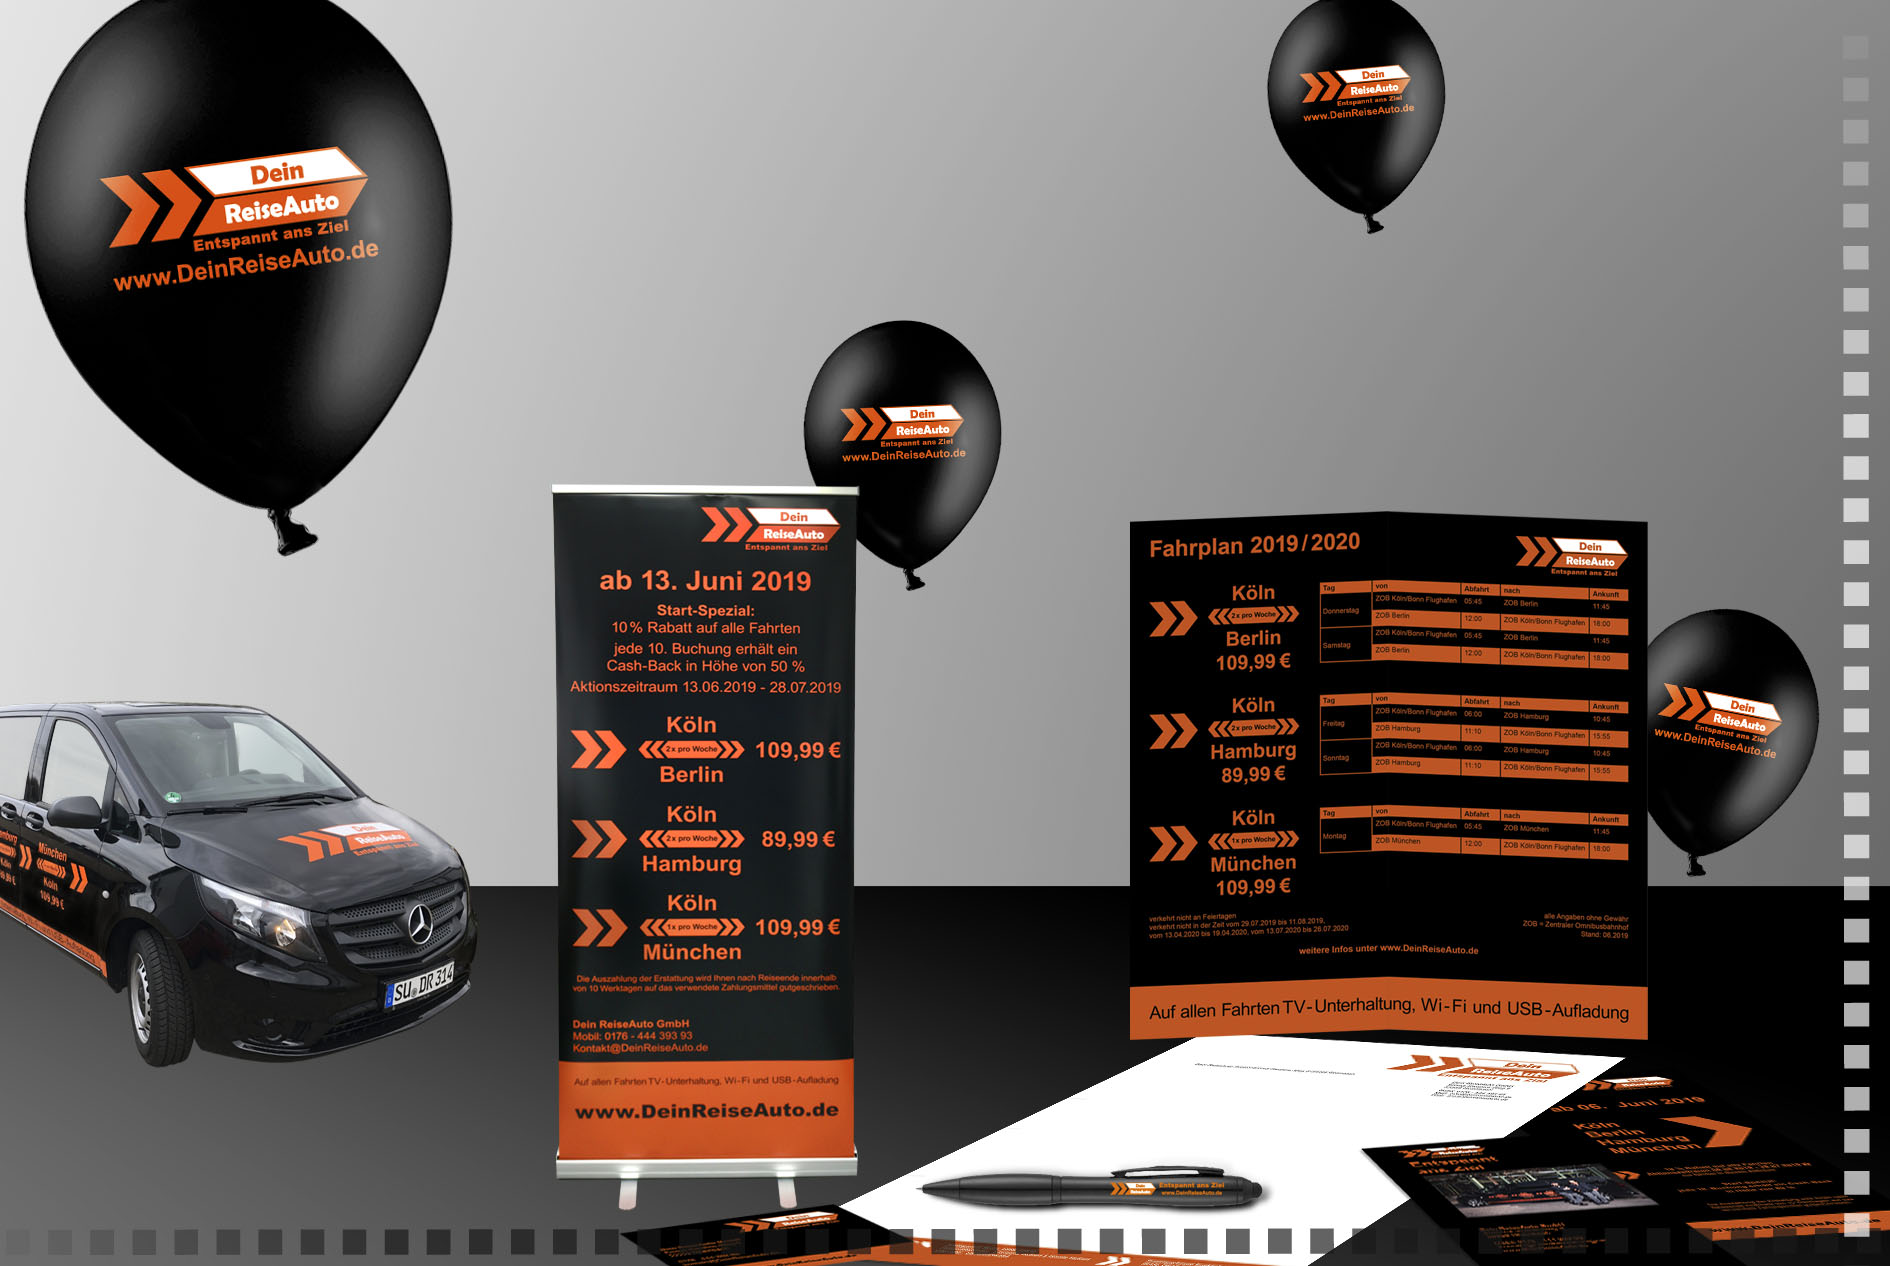 Corporate Design Konzeptionierung für Dein Reise Auto GmbH - Bild